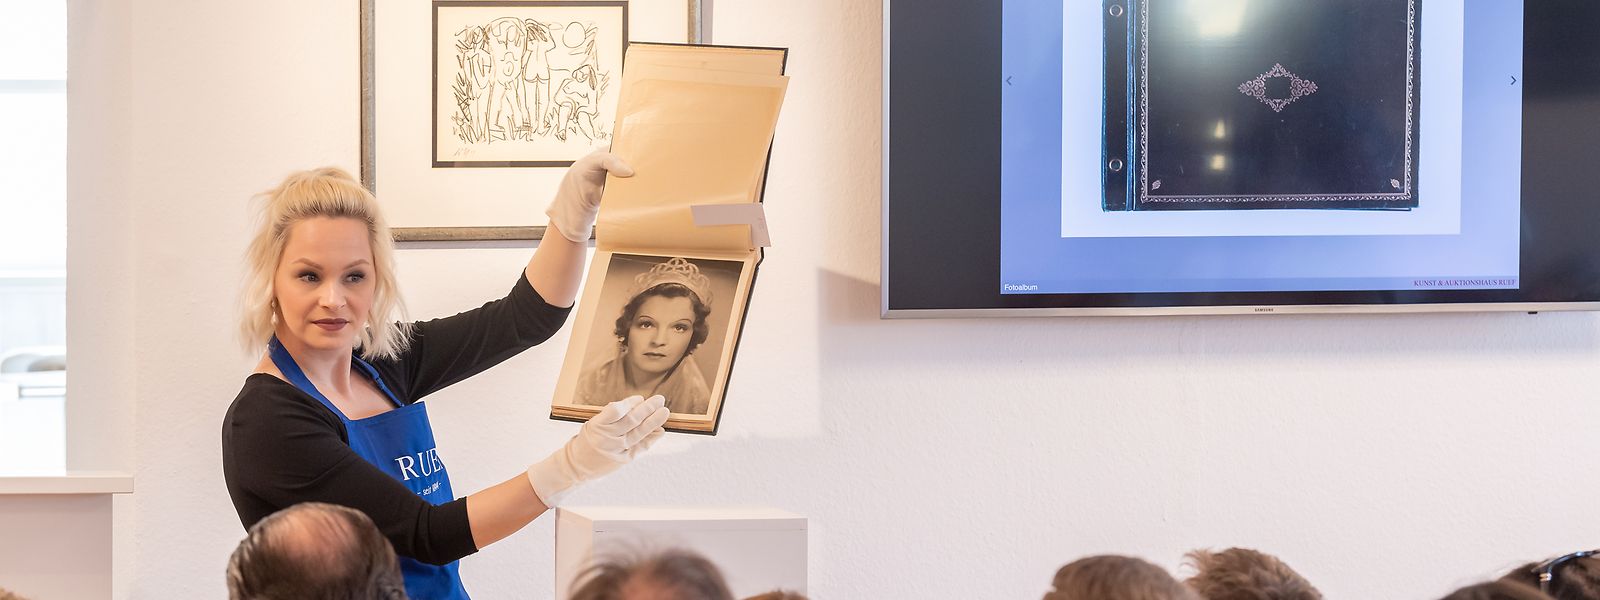 Auktionshaus-Besucher nehmen an einer Versteigerung von Romy-Schneider-Devotionalien teil. Auf dem Foto ist ein Fotoalbum mit Set-Bildern von Romy Schneiders Mutter Magda Schneider zu sehen.